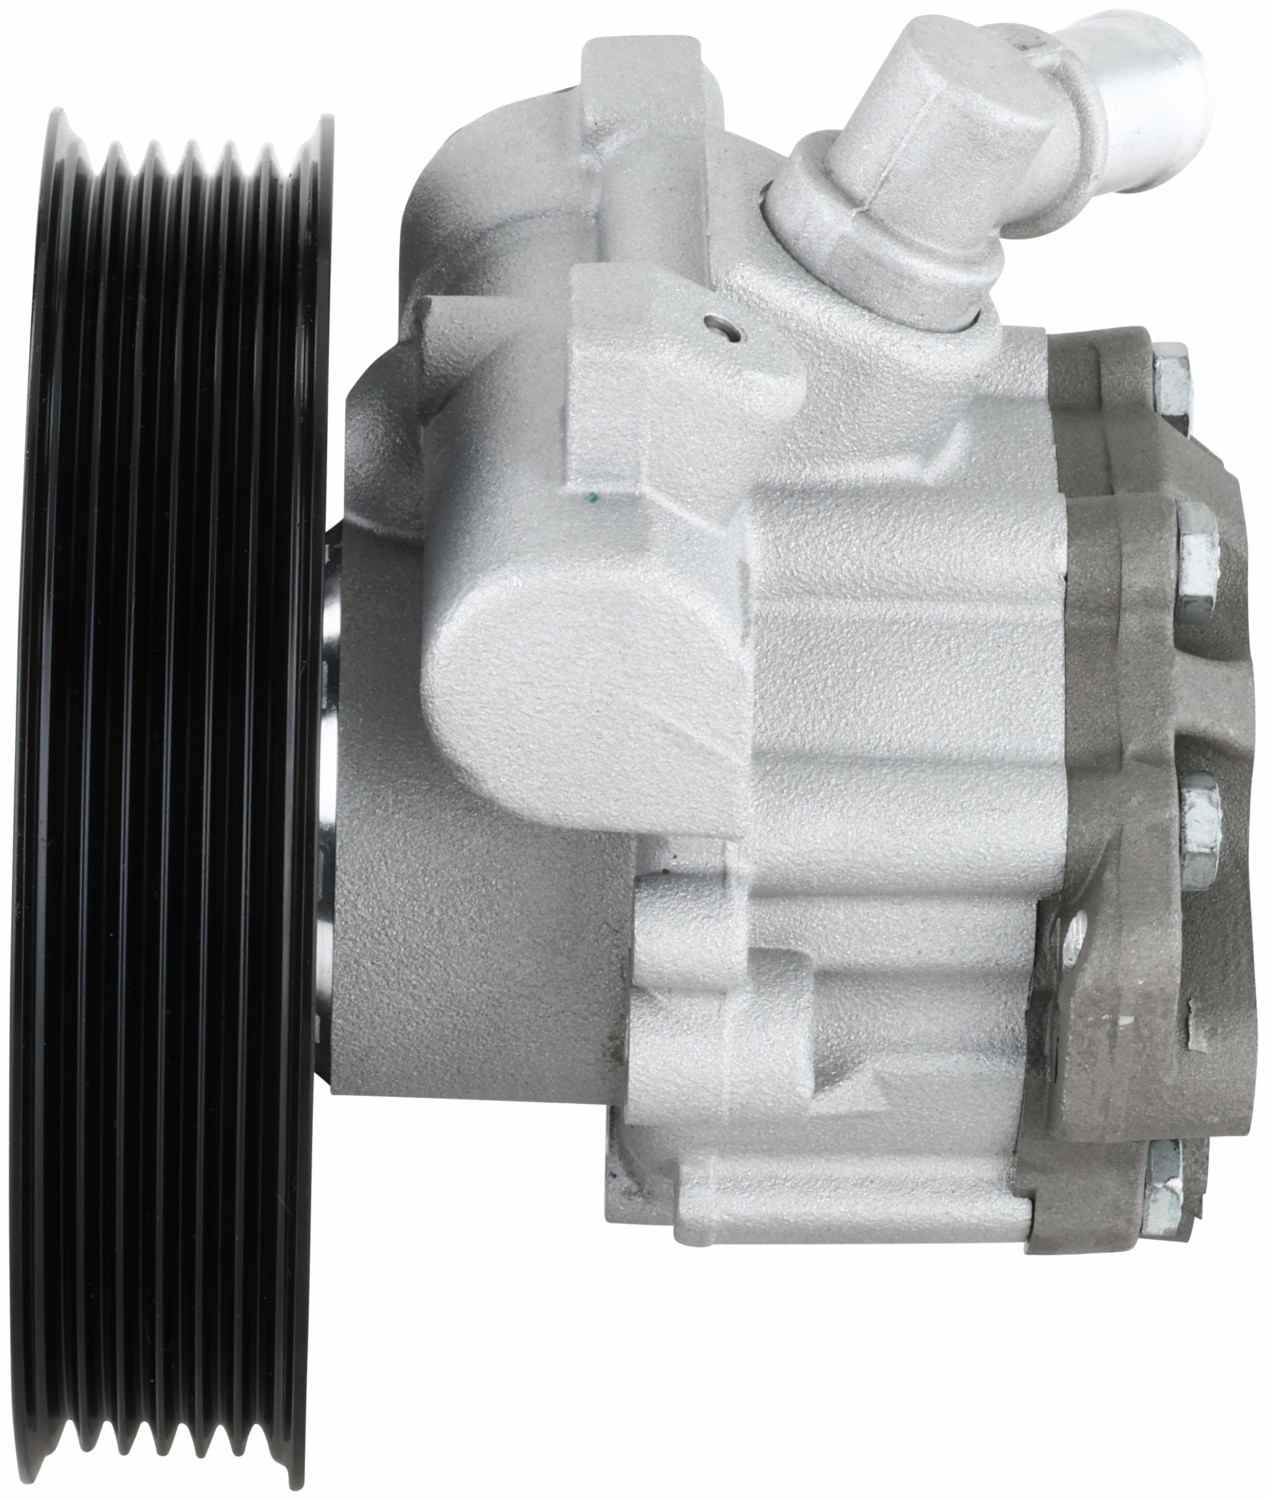 Bosch Power Steering Pump KS02000067